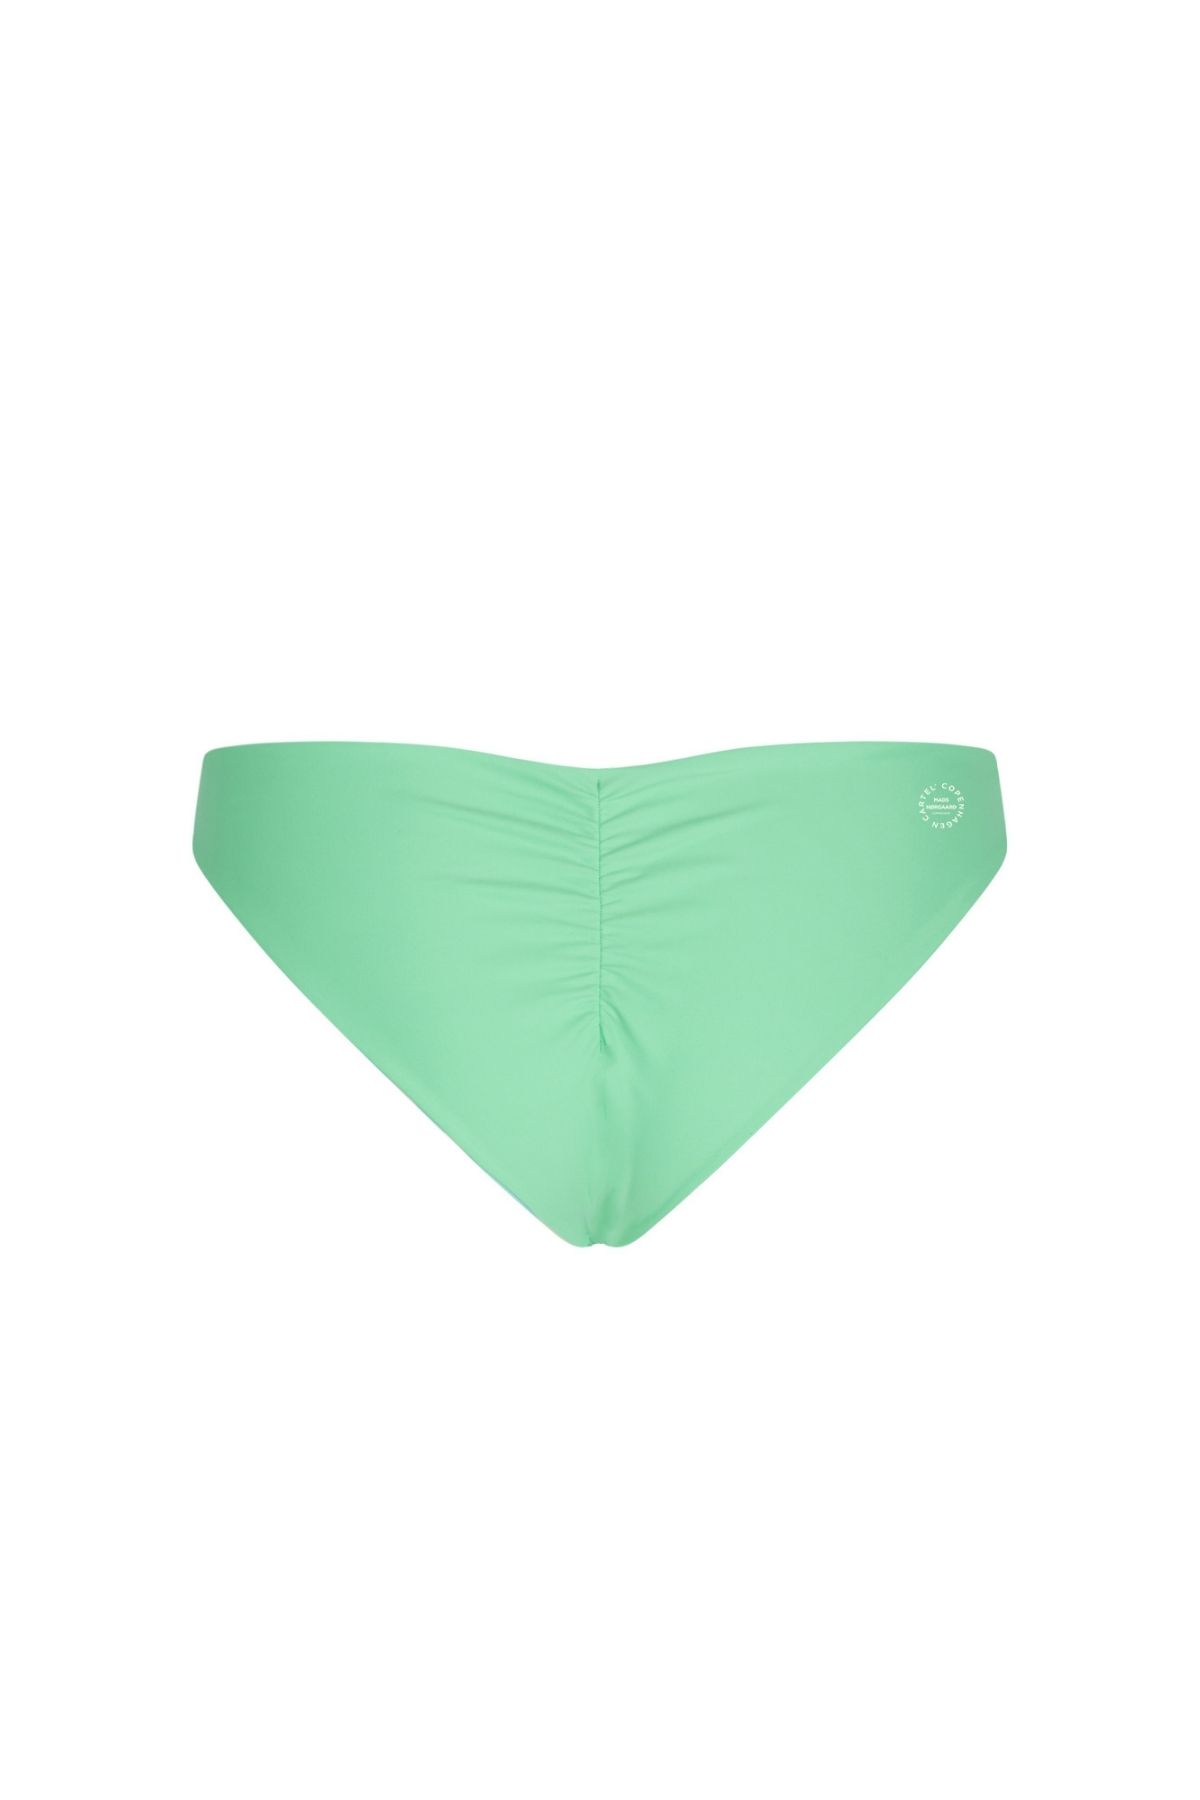 Mads Nørgaard x CC Batur reversible bikini bottom - Mint